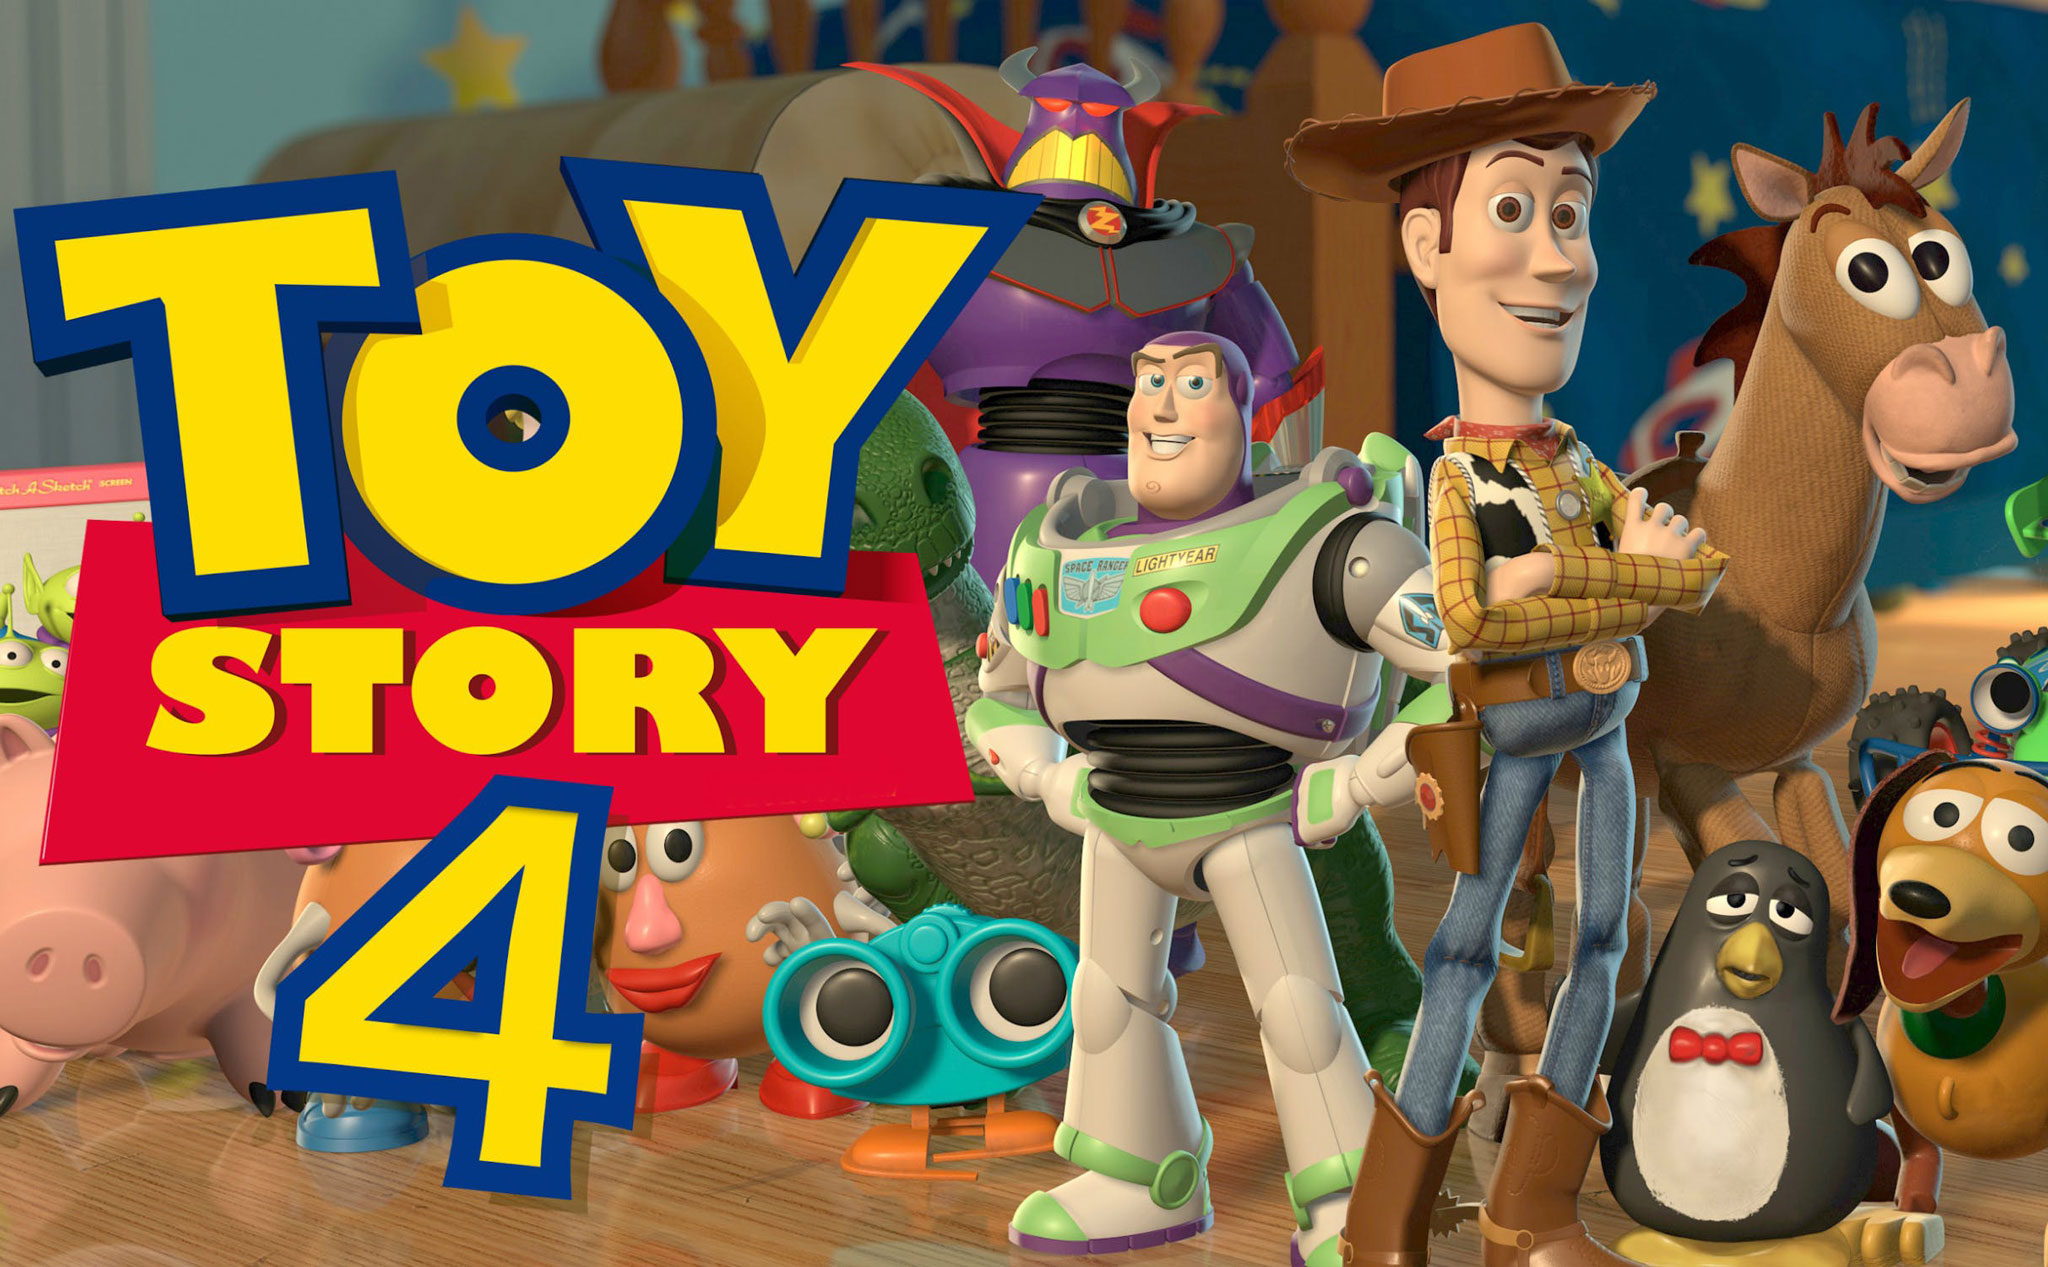 Cuối cùng thì Câu chuyện đồ chơi - Toy Story phần 4 cũng đã xuất hiện, 21/6 phát hành